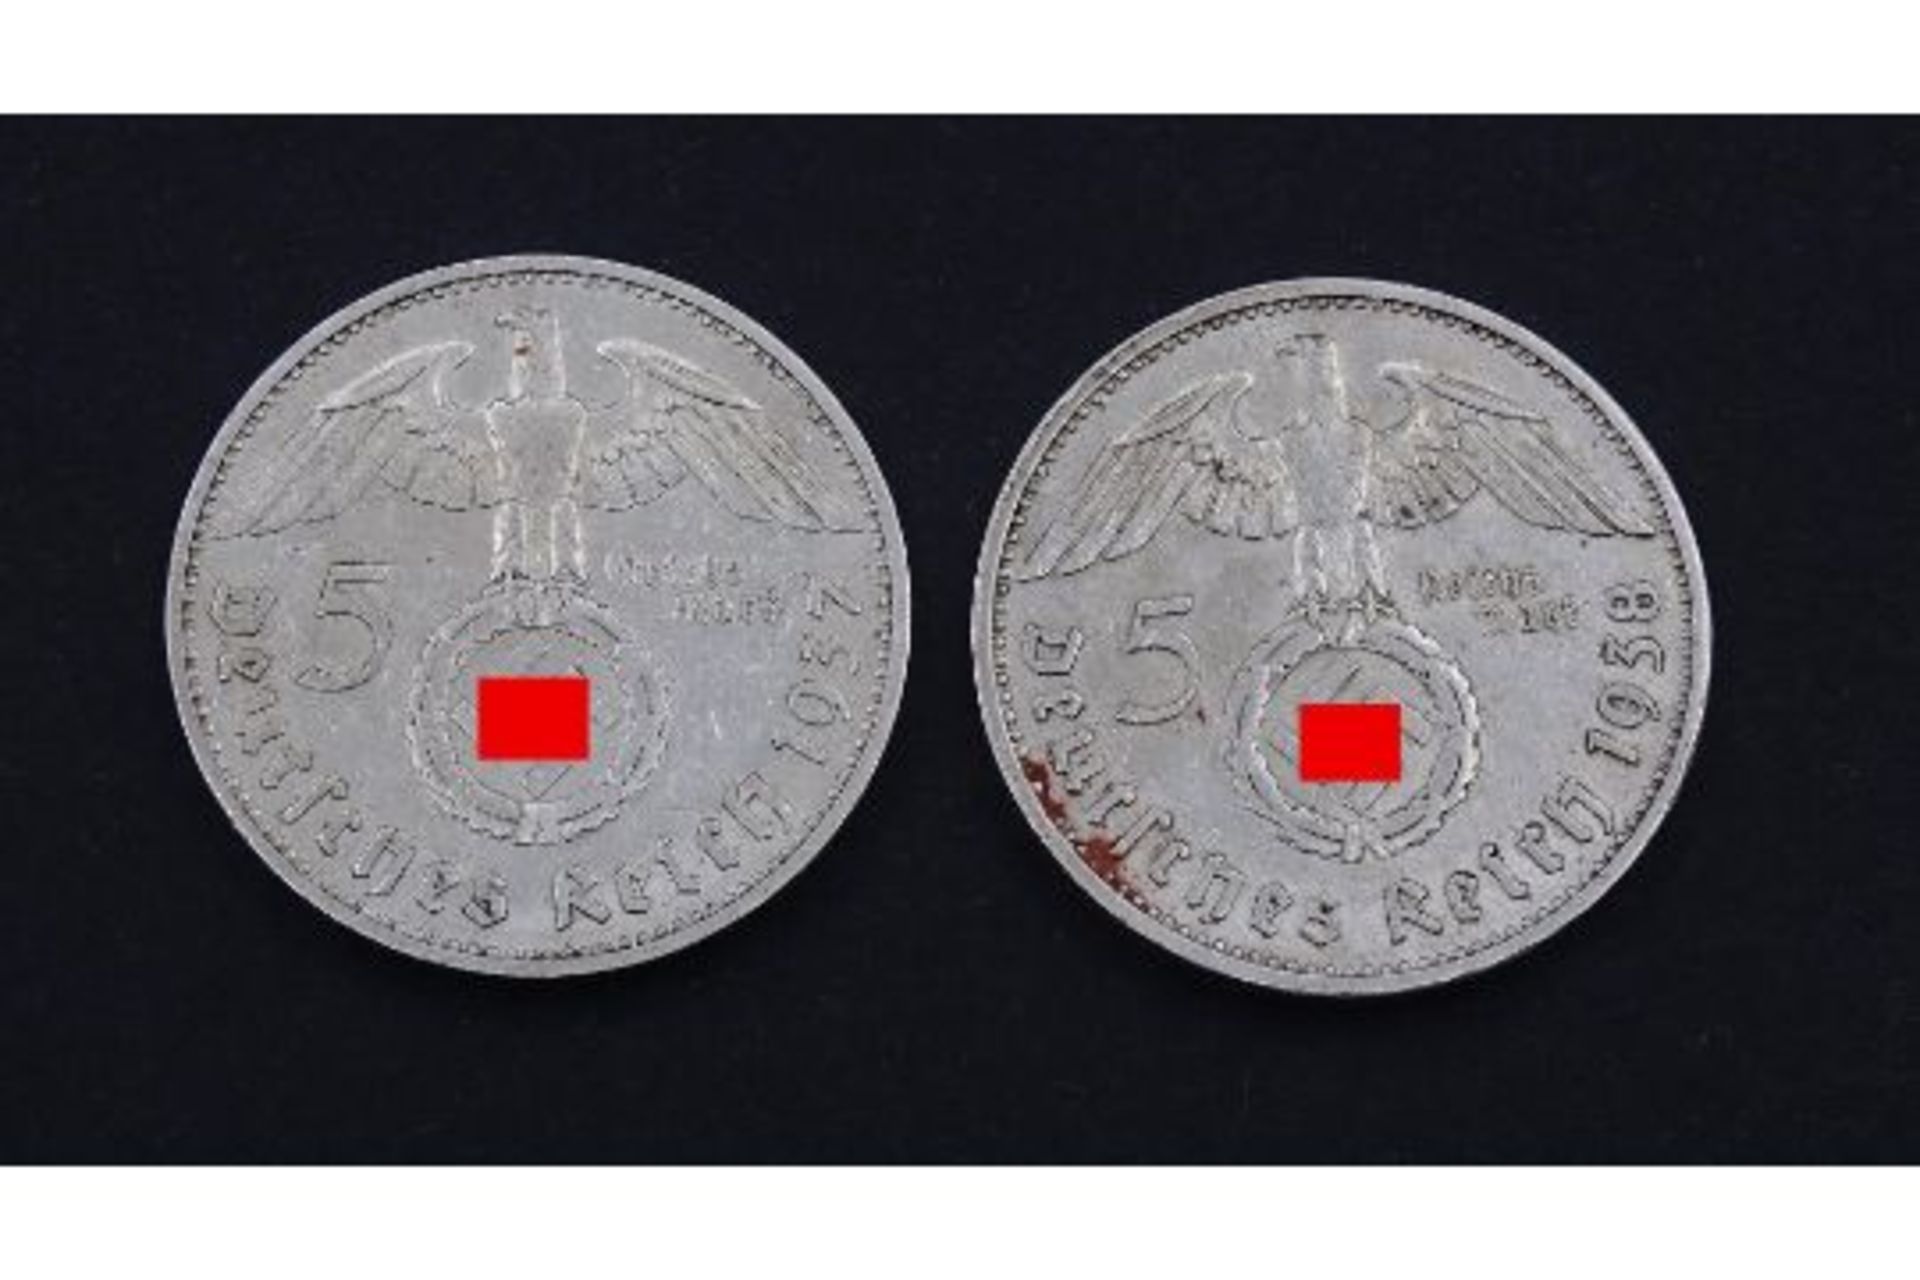 2x 5 Reichsmark , Deutsches Reich, Paul von Hindenburg 1937 / 1938 - Image 2 of 2